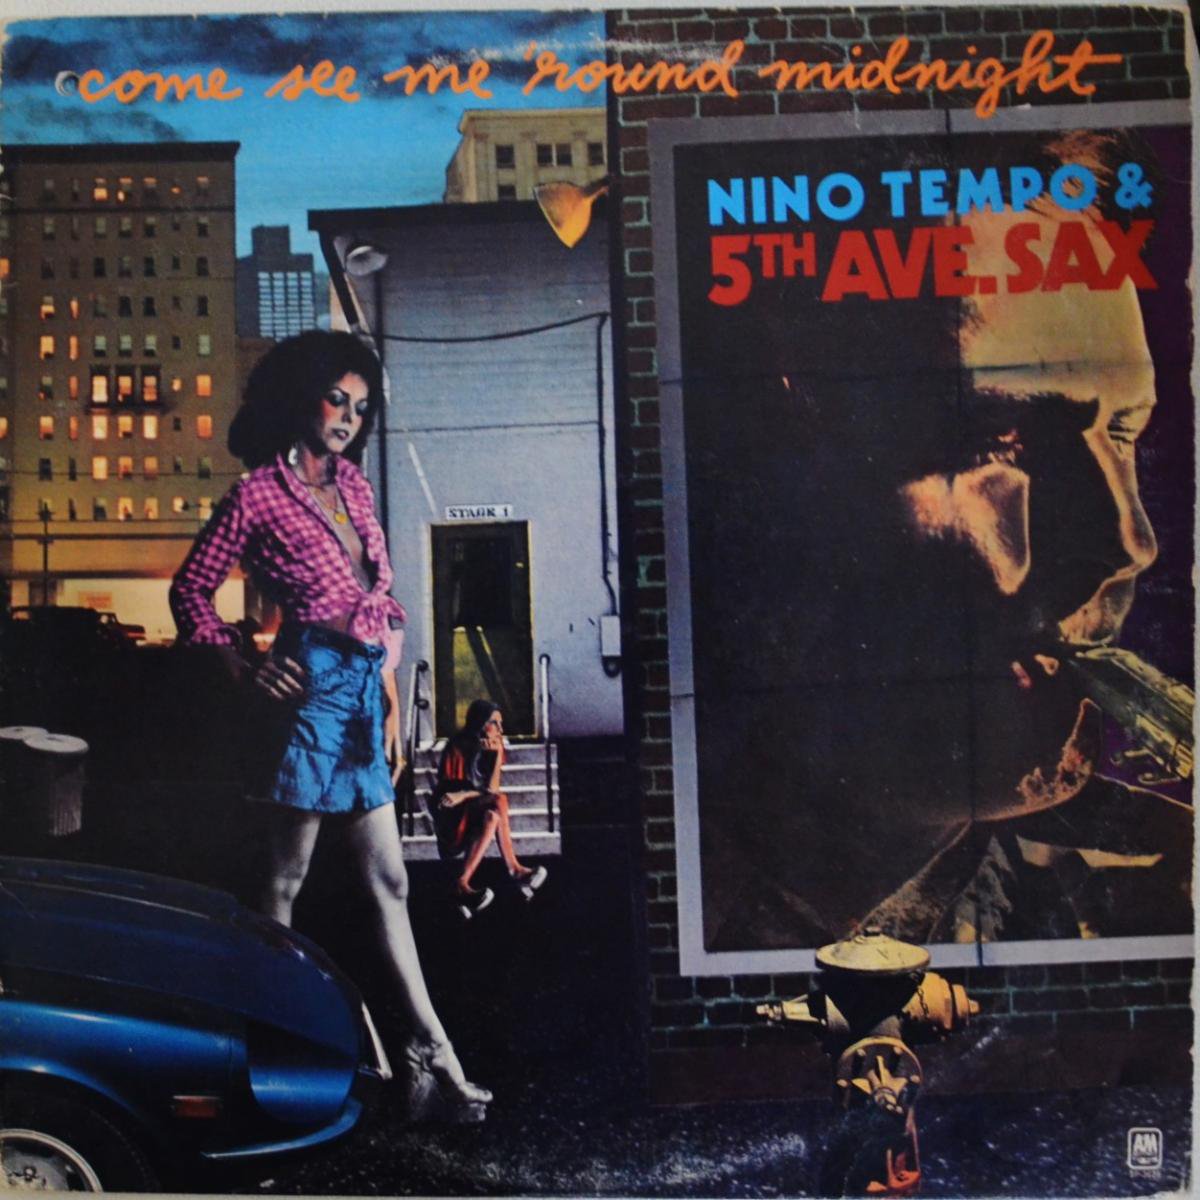 NINO TEMPO & 5TH AVE. SAX / COME SEE ME 'ROUND MIDNIGHT (LP)